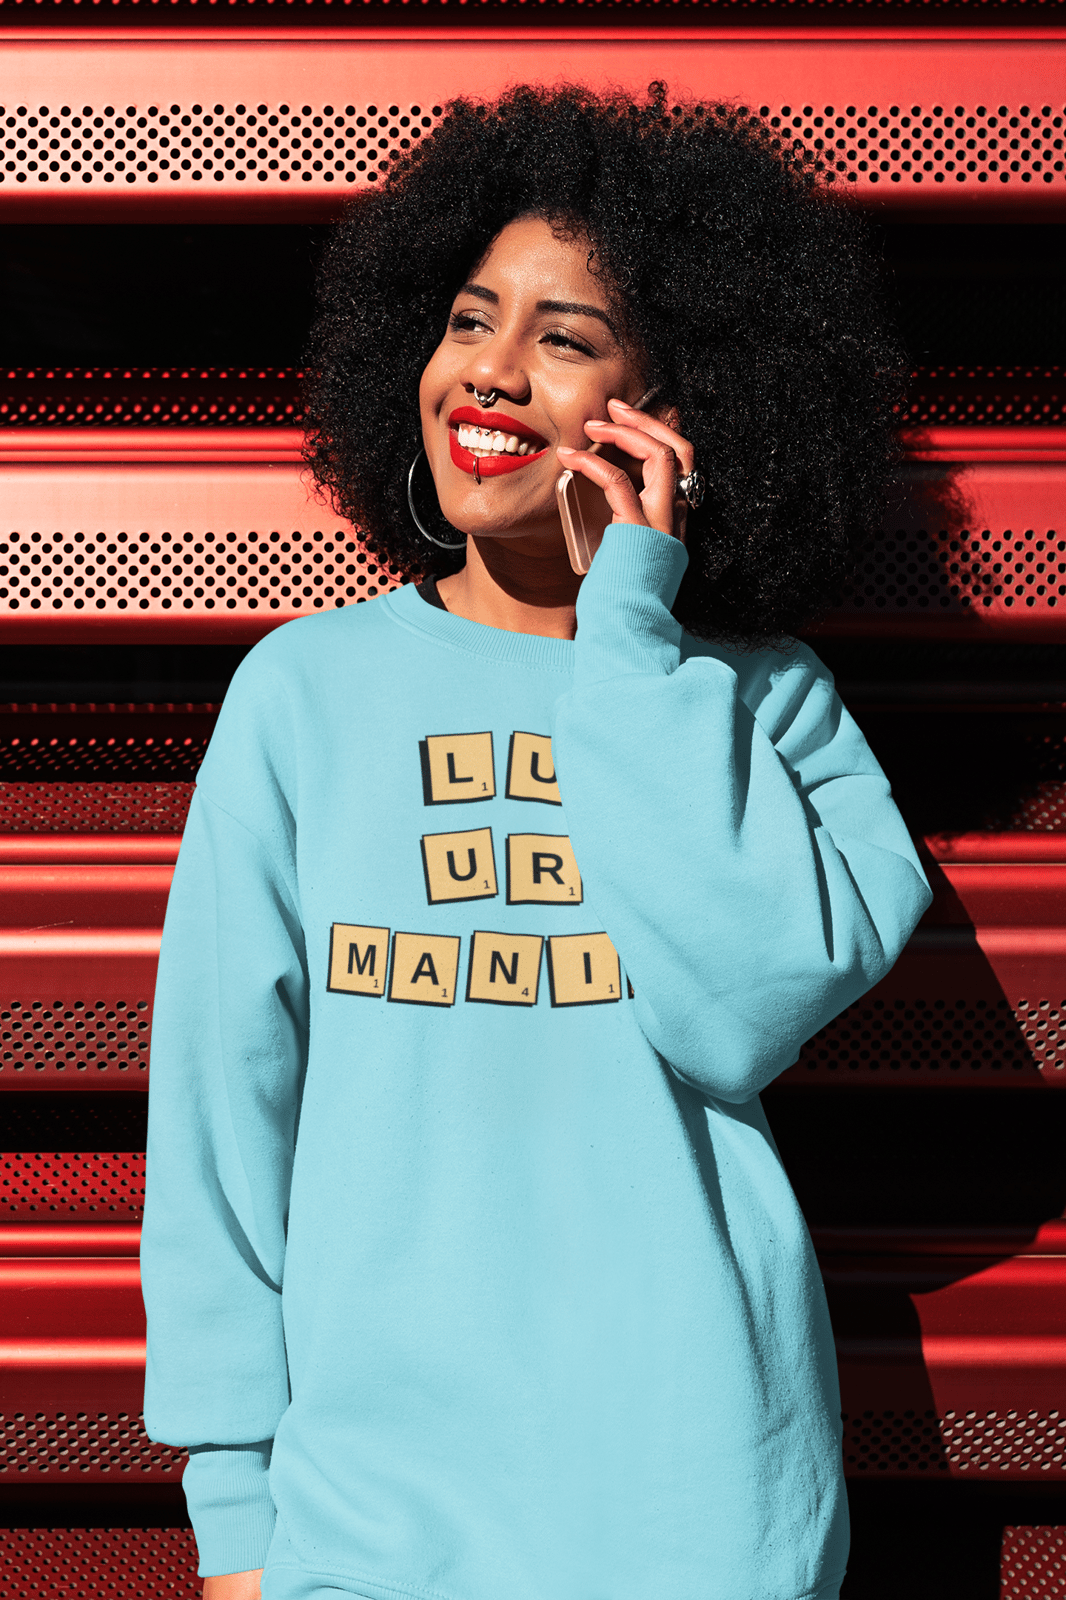 LuxuryManiac Unisex Sweatshirt | LookOfLuxury